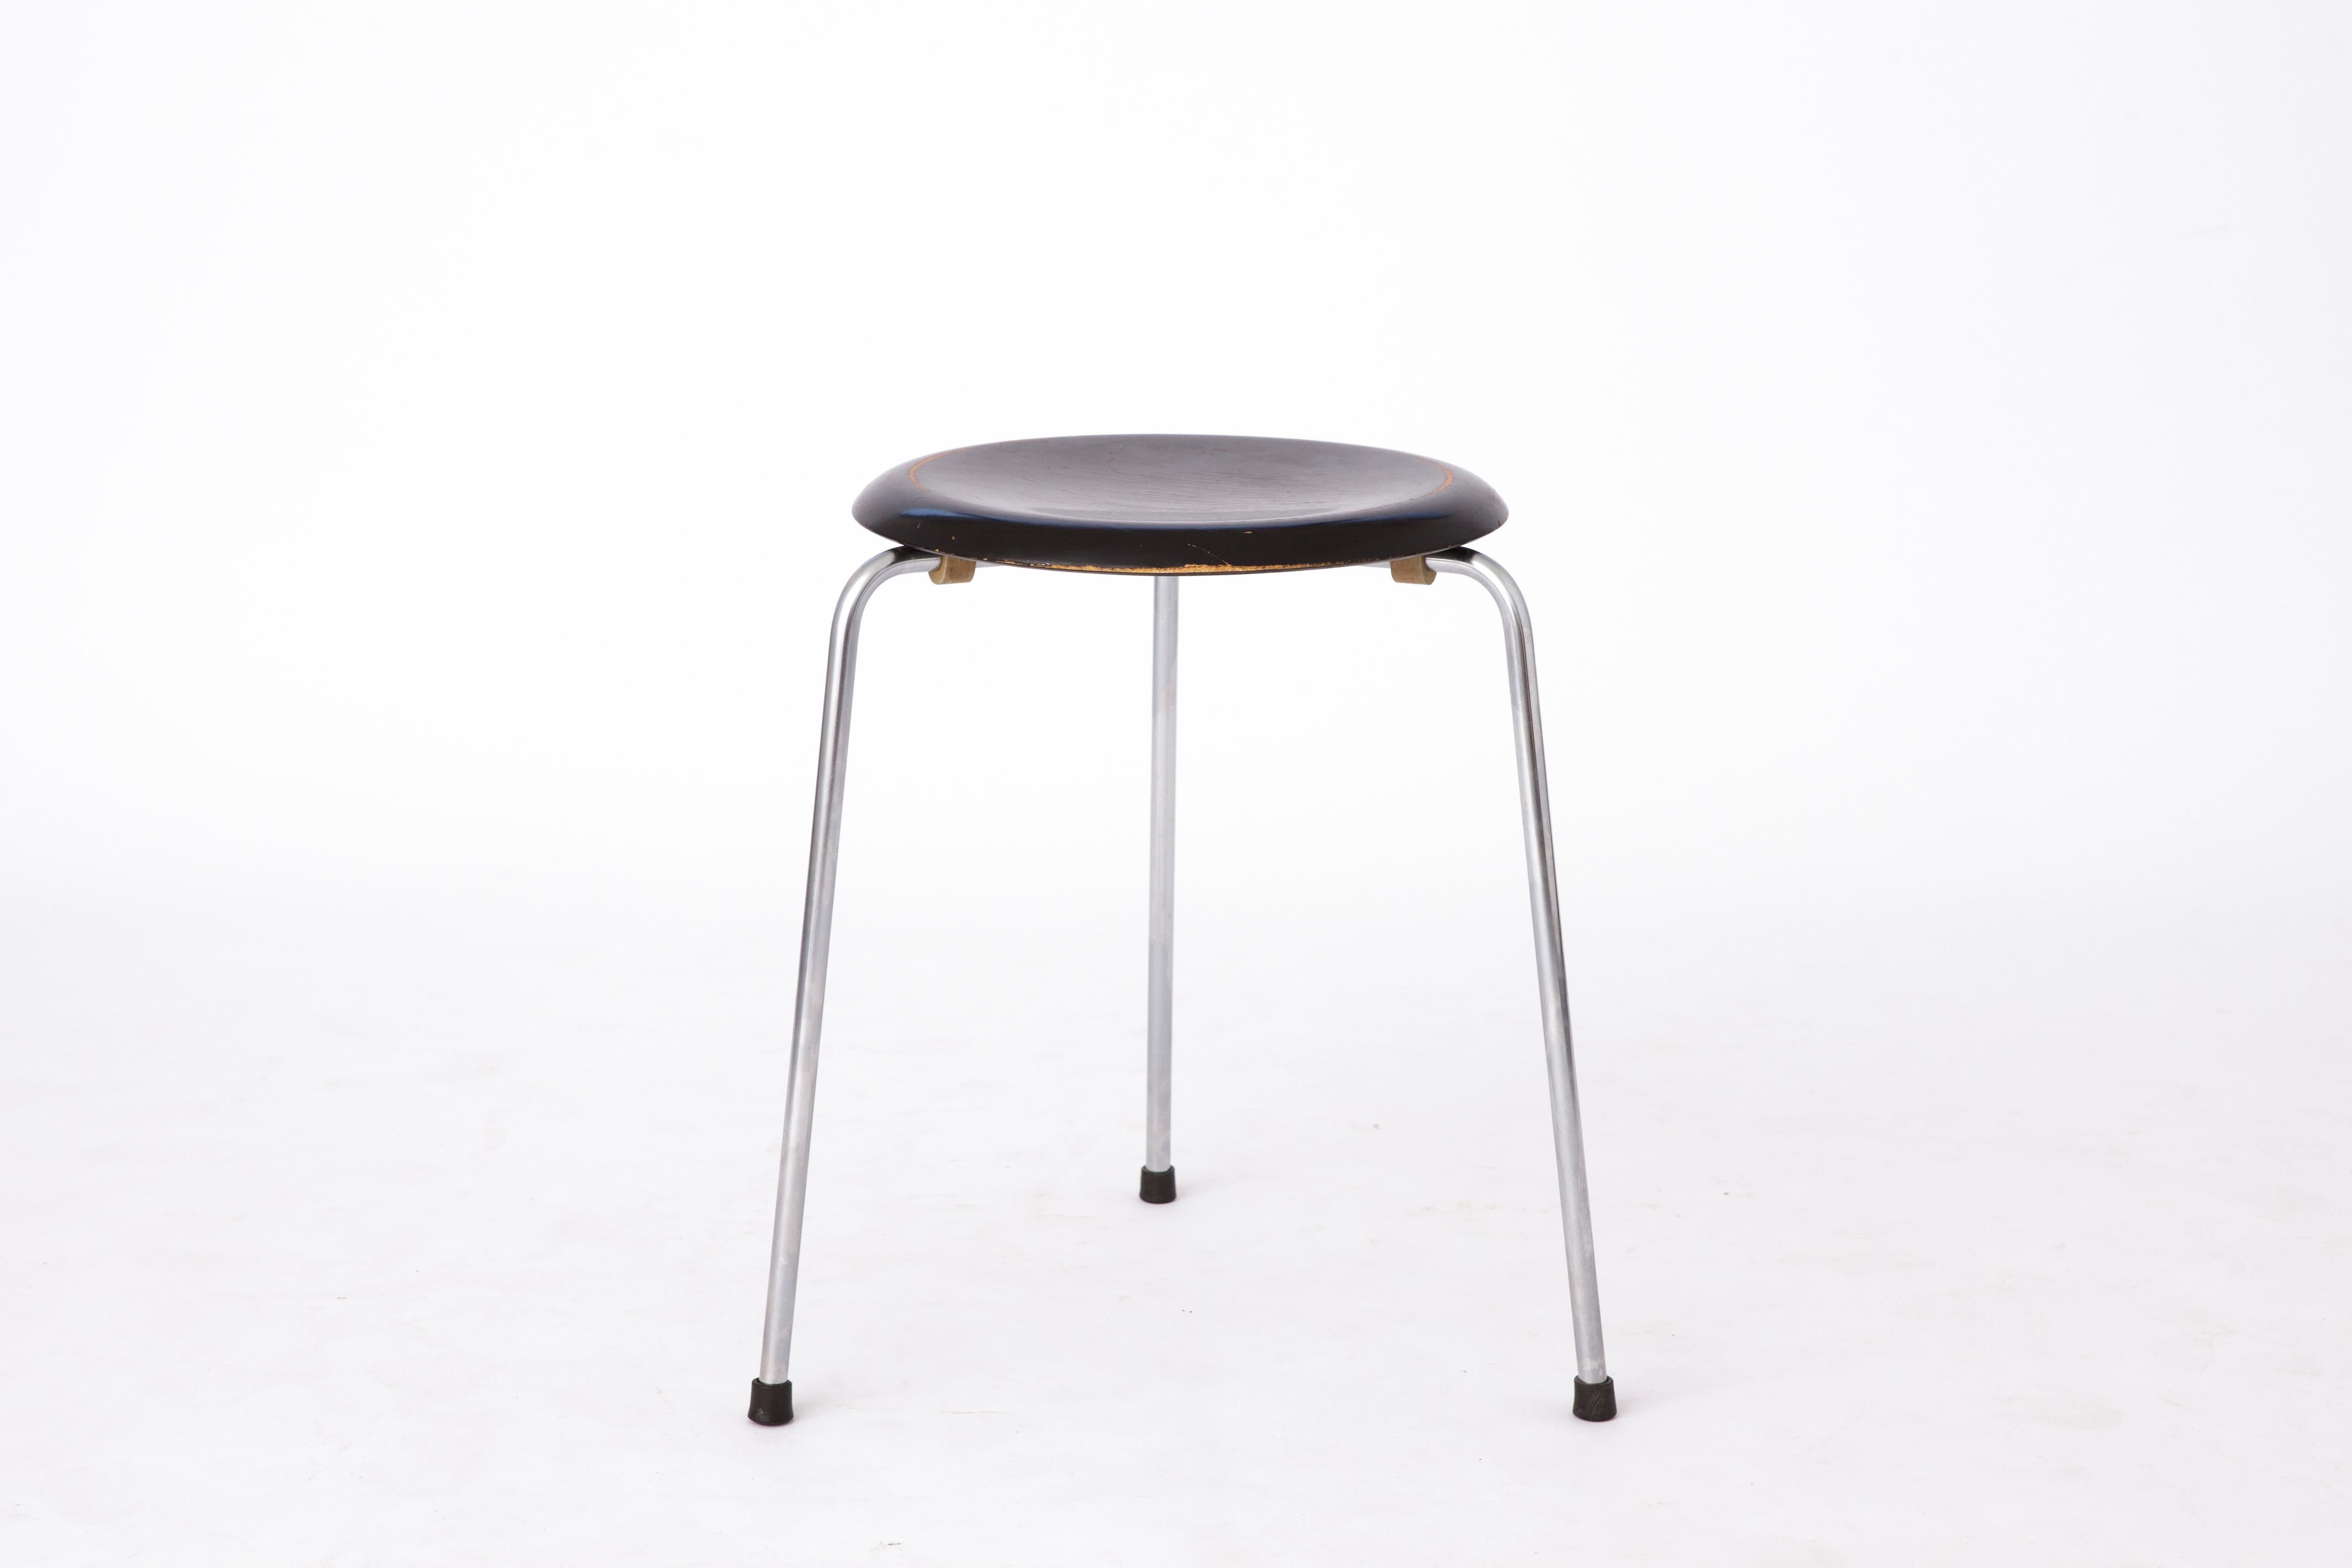 Der Hocker DOT wurde von Arne Jacobsen in den 1950er Jahren zur gleichen Zeit wie der Ant Chair oder der Ant entworfen und von Fritz Hansen hergestellt. Offiziell kam er 1954 als ursprünglich dreibeiniger Hocker in Furnier auf den Markt. Ab 1970